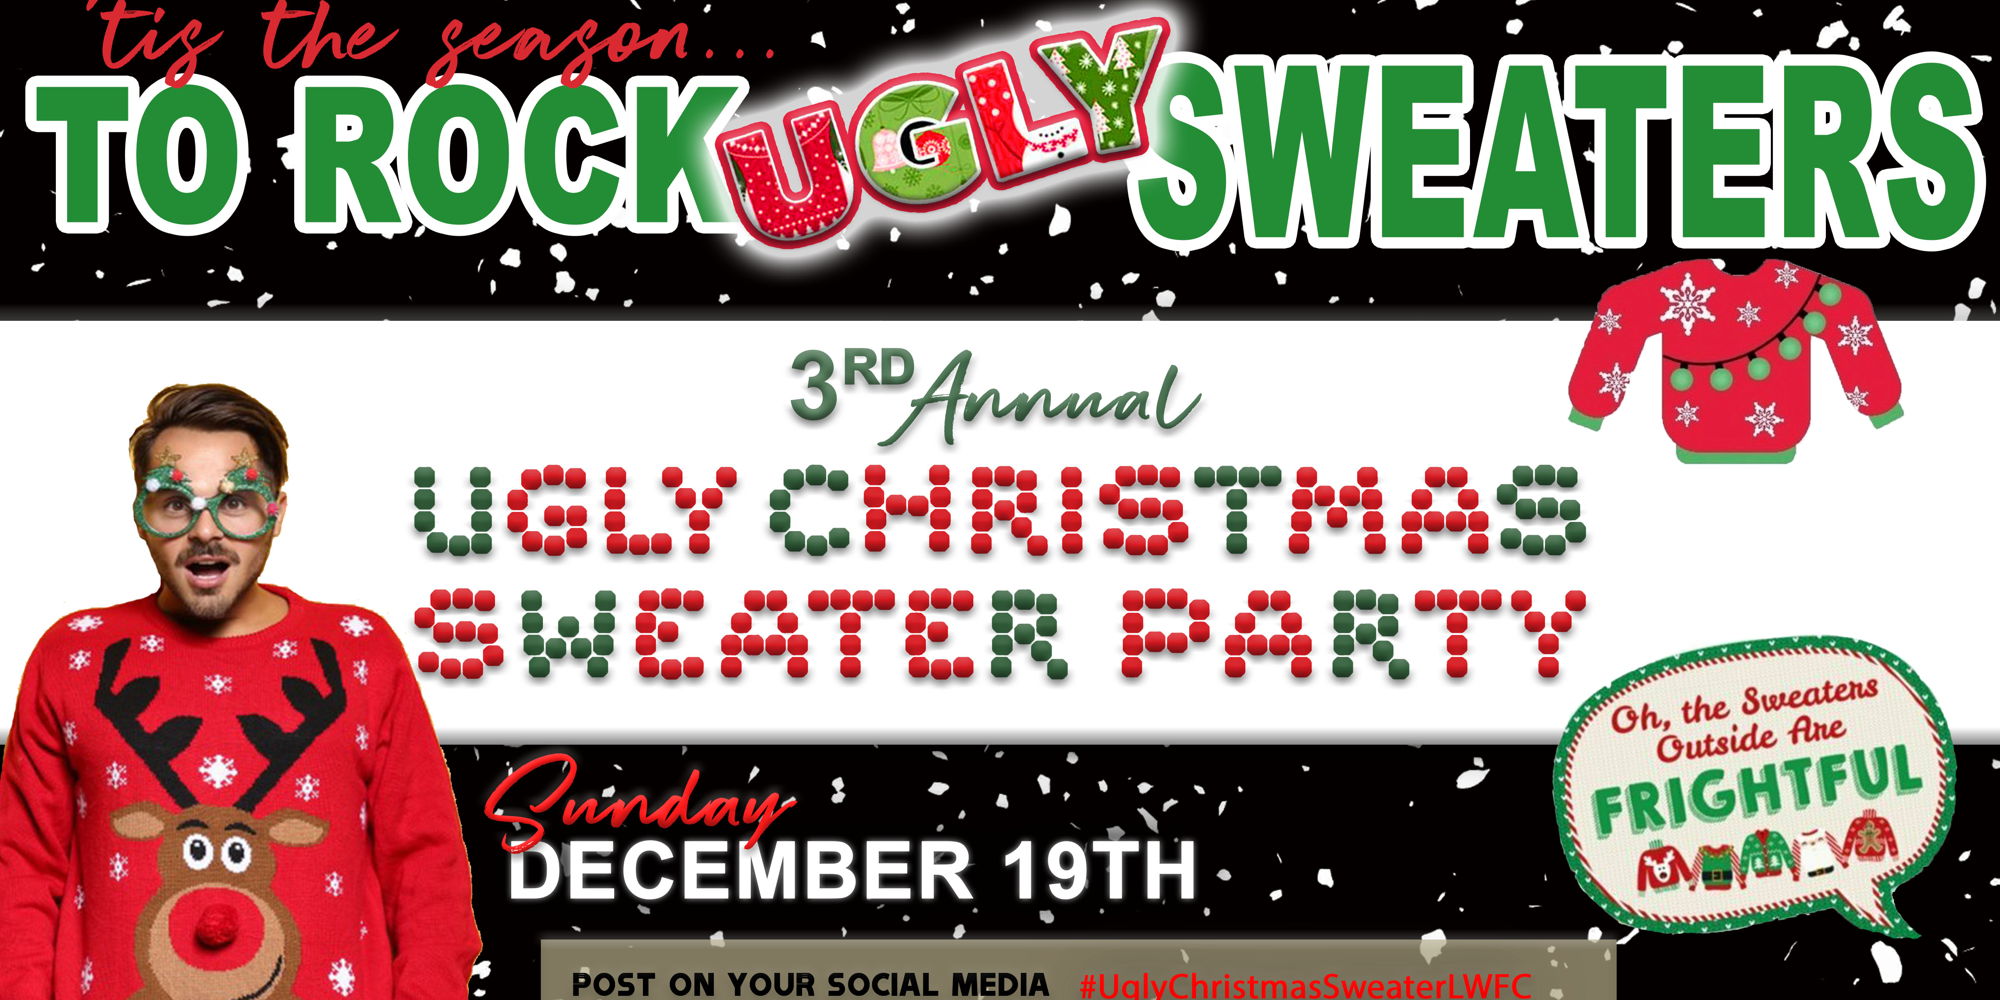 Christmas Sunday - Ugly Christmas Sweater Sunday promotional image